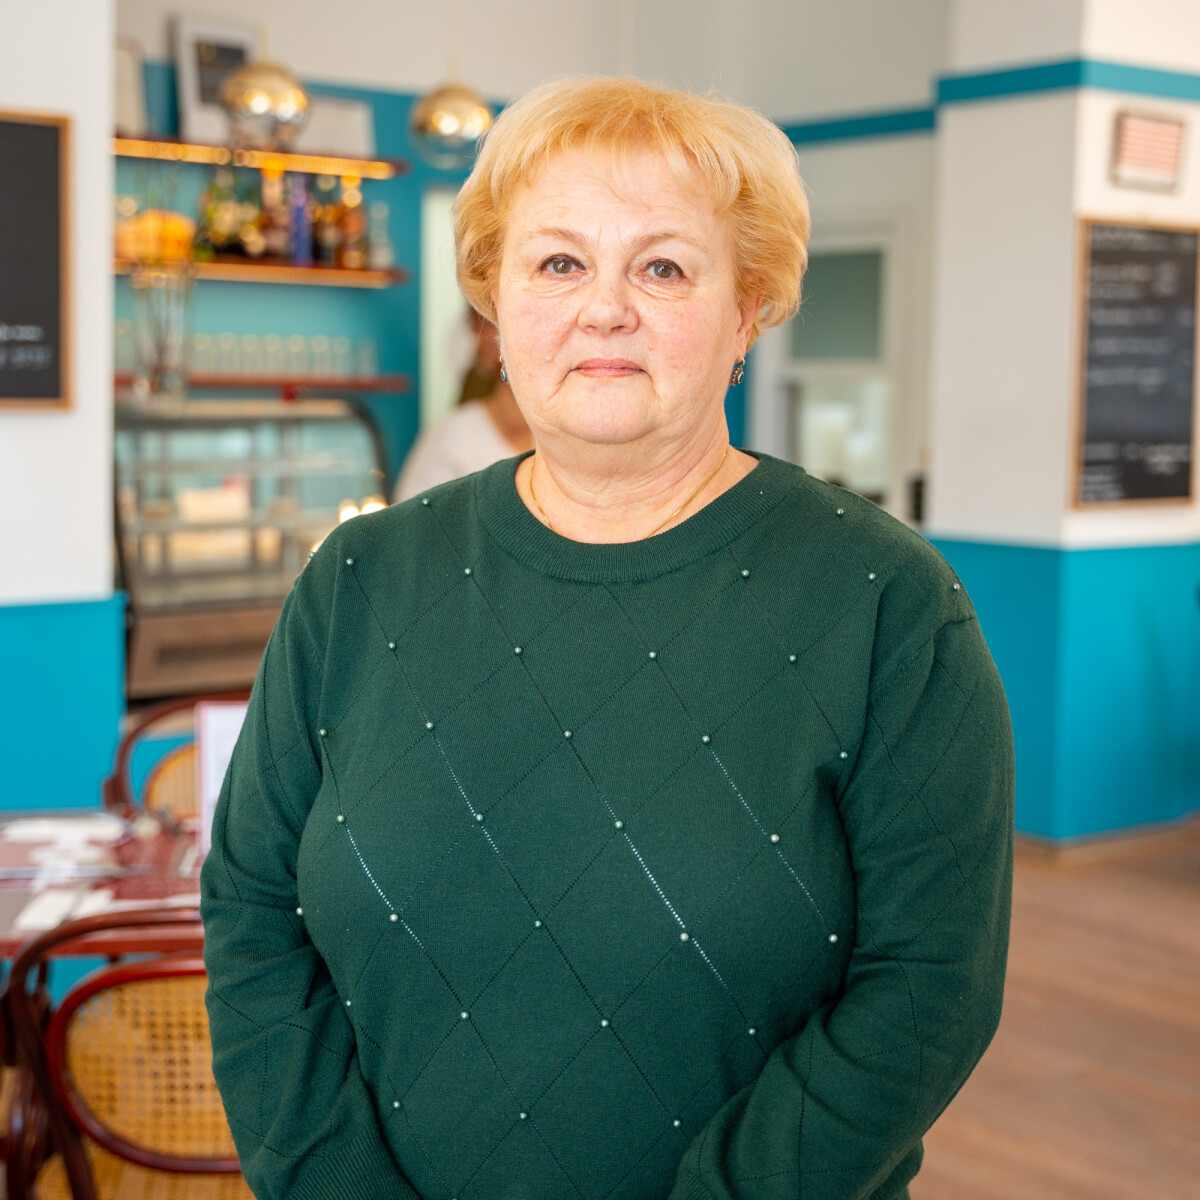 Megváltozott munkaképességűeket foglalkoztat a Hatpöttyös, Székesfehérvár kedvelt étterme